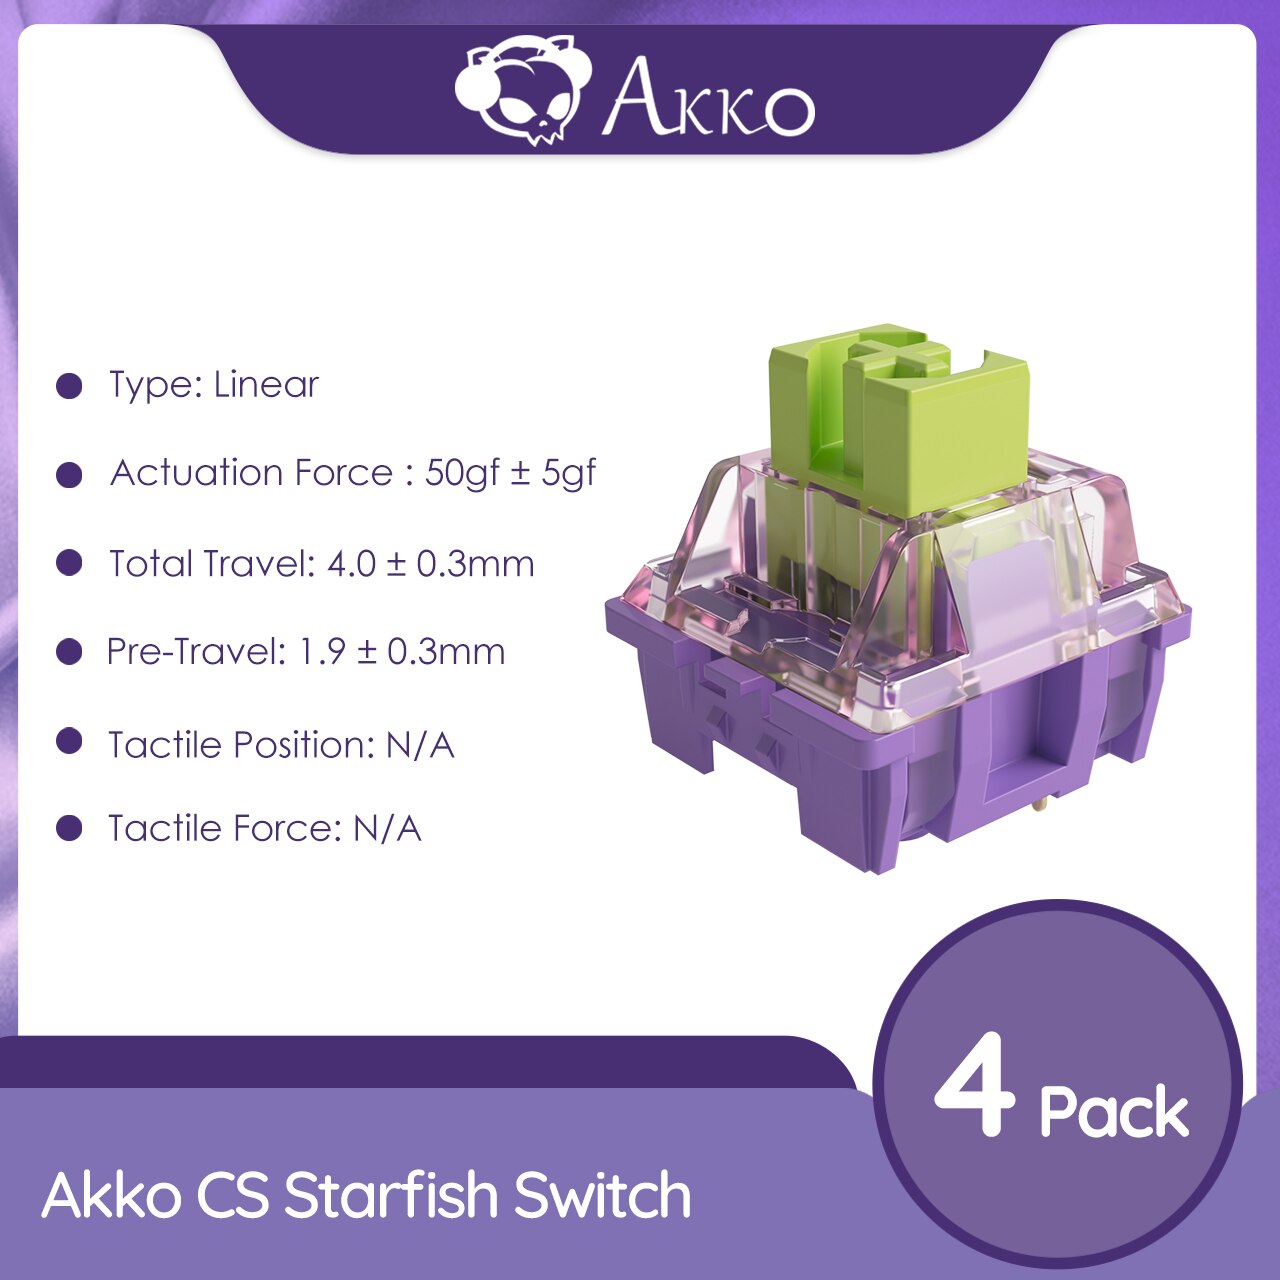 Akko CS Starfish Switches 3 Pin 50gf خطي مع جذع مقاوم للغبار متوافق مع لوحة المفاتيح الميكانيكية MX (45 قطعة) 